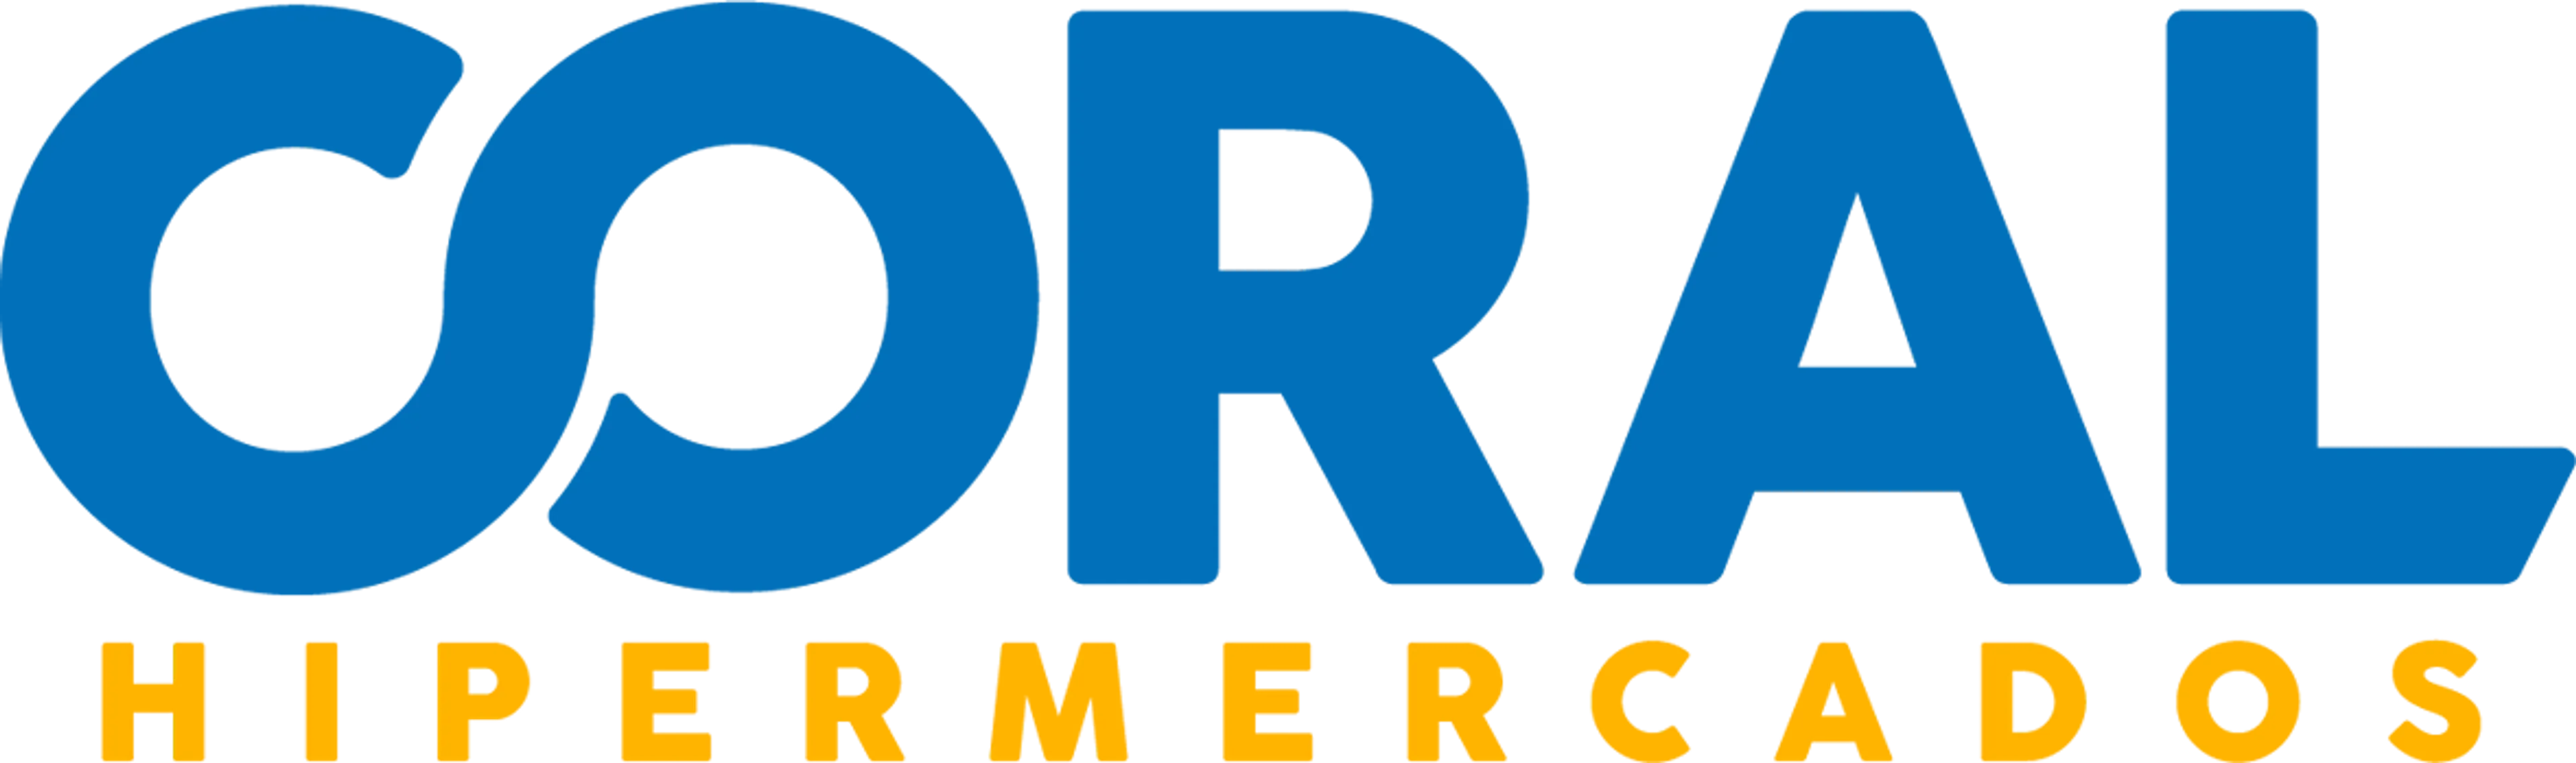 CORAL HIPERMERCADOS logo